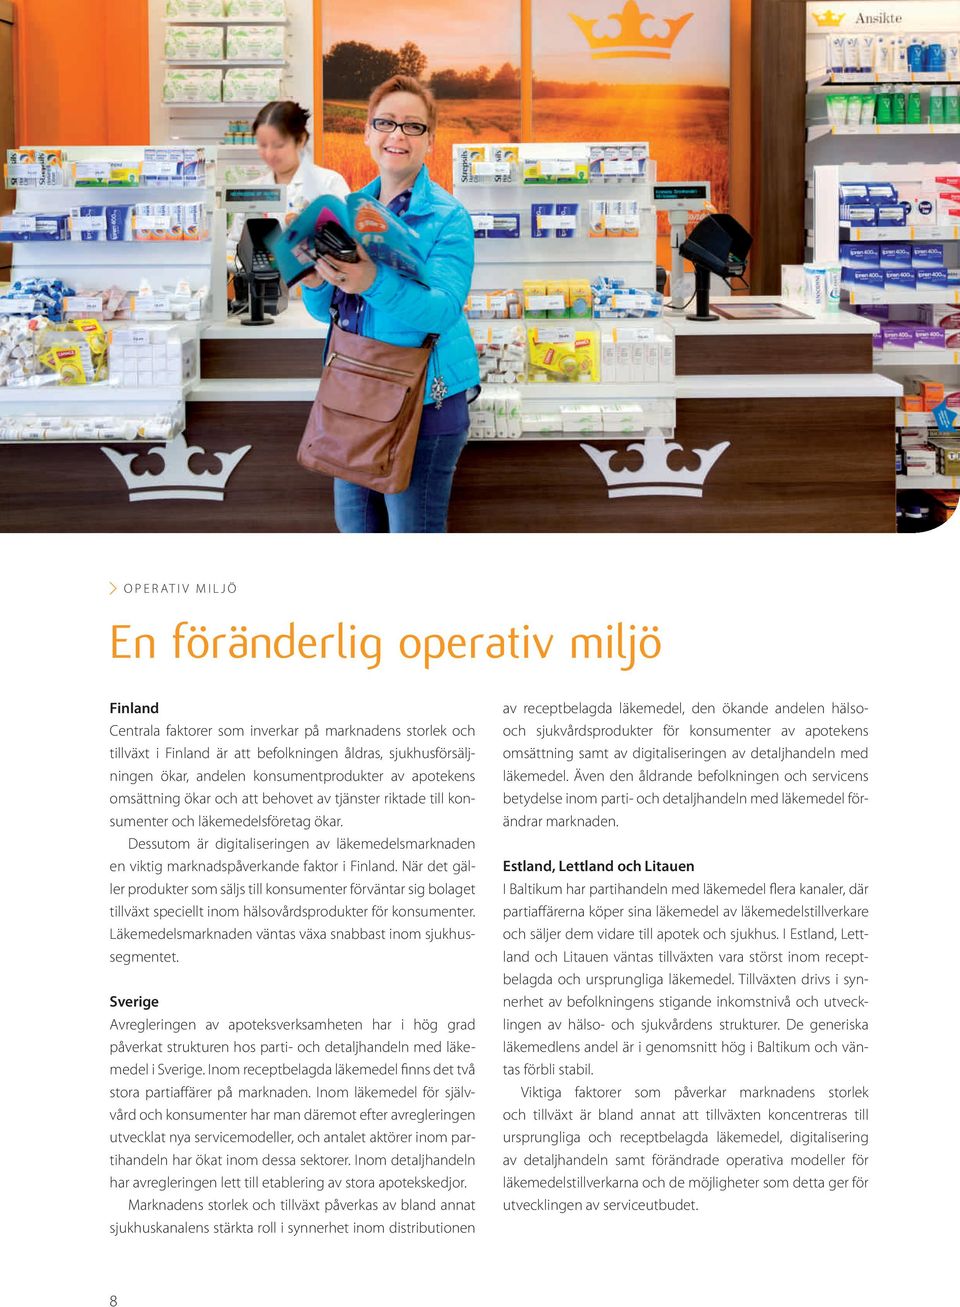 Dessutom är digitaliseringen av läkemedelsmarknaden en viktig marknadspåverkande faktor i Finland.